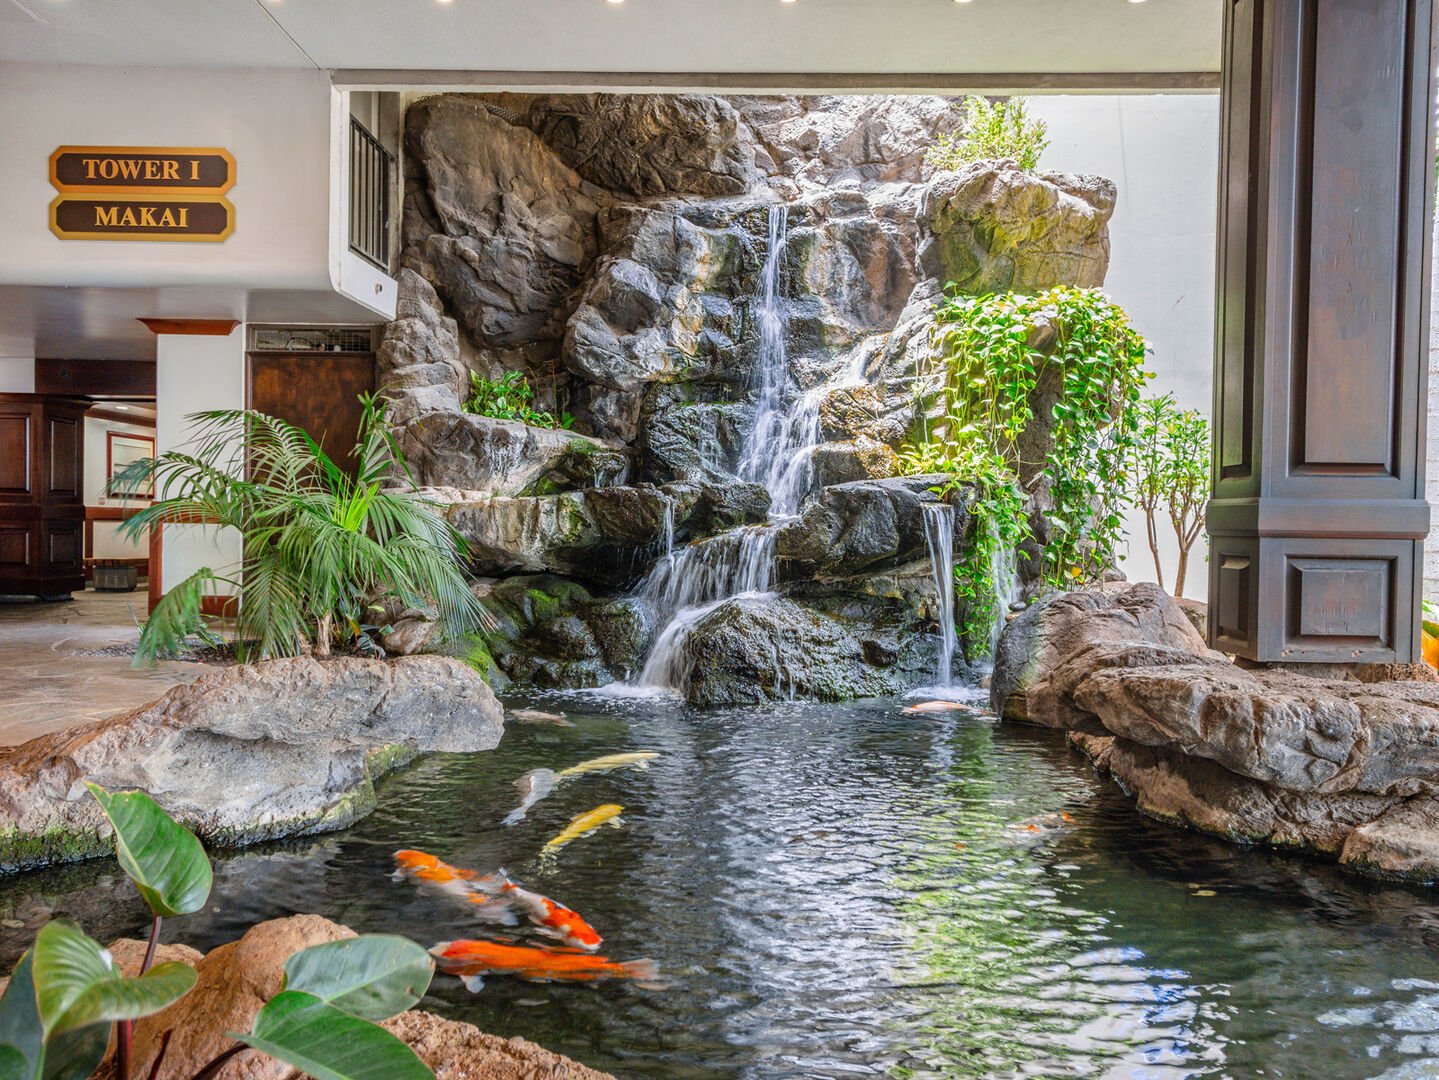 Koi pond at the lobby